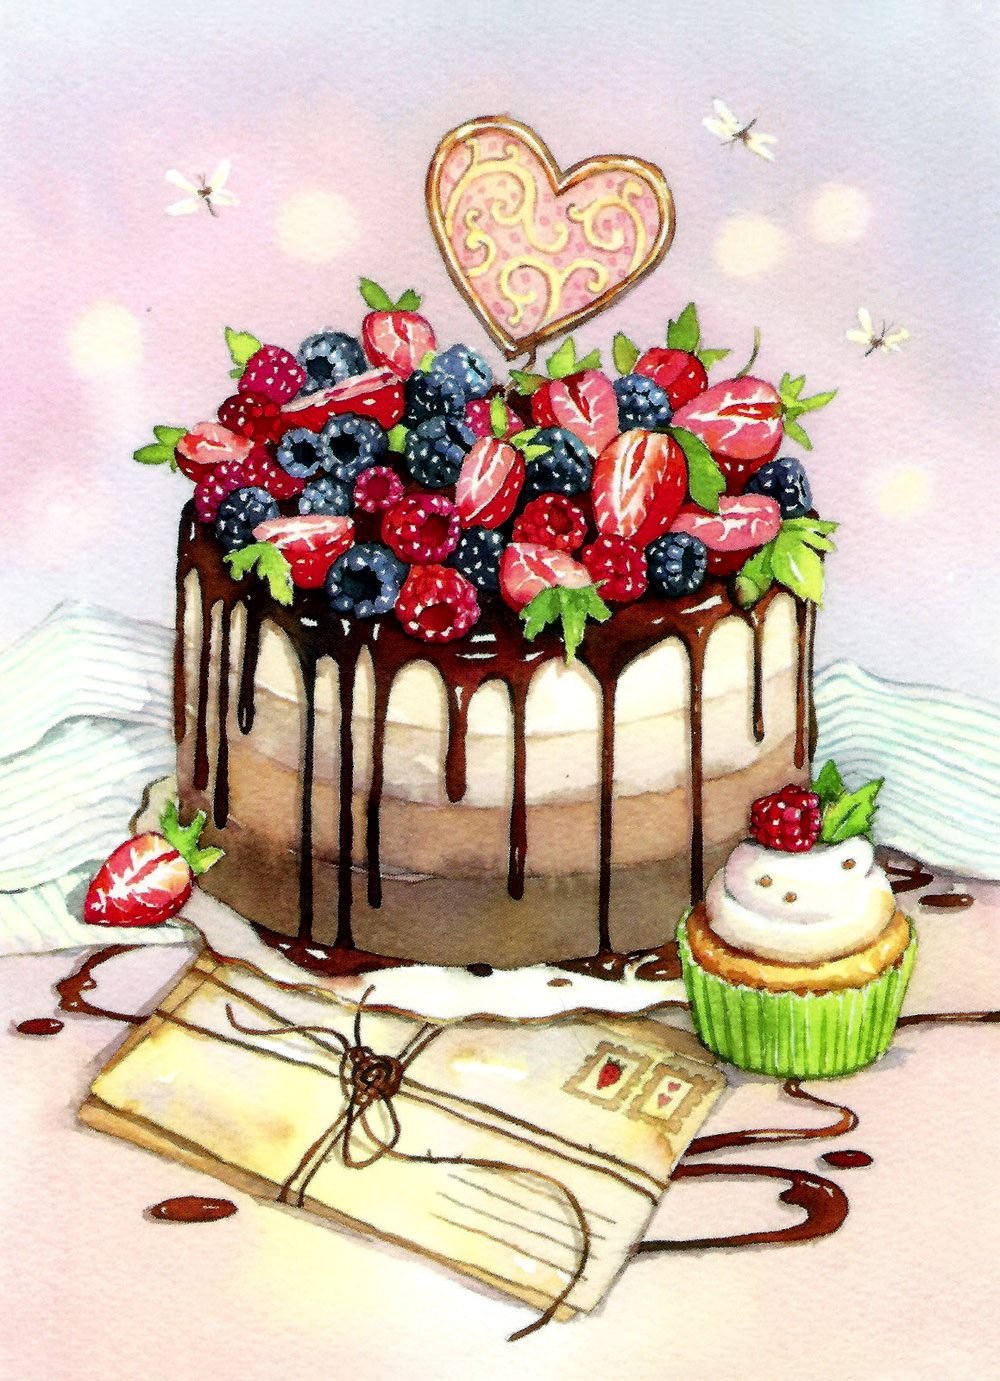 Открытка с днем рождения торт Изображения – скачать бесплатно на Freepik